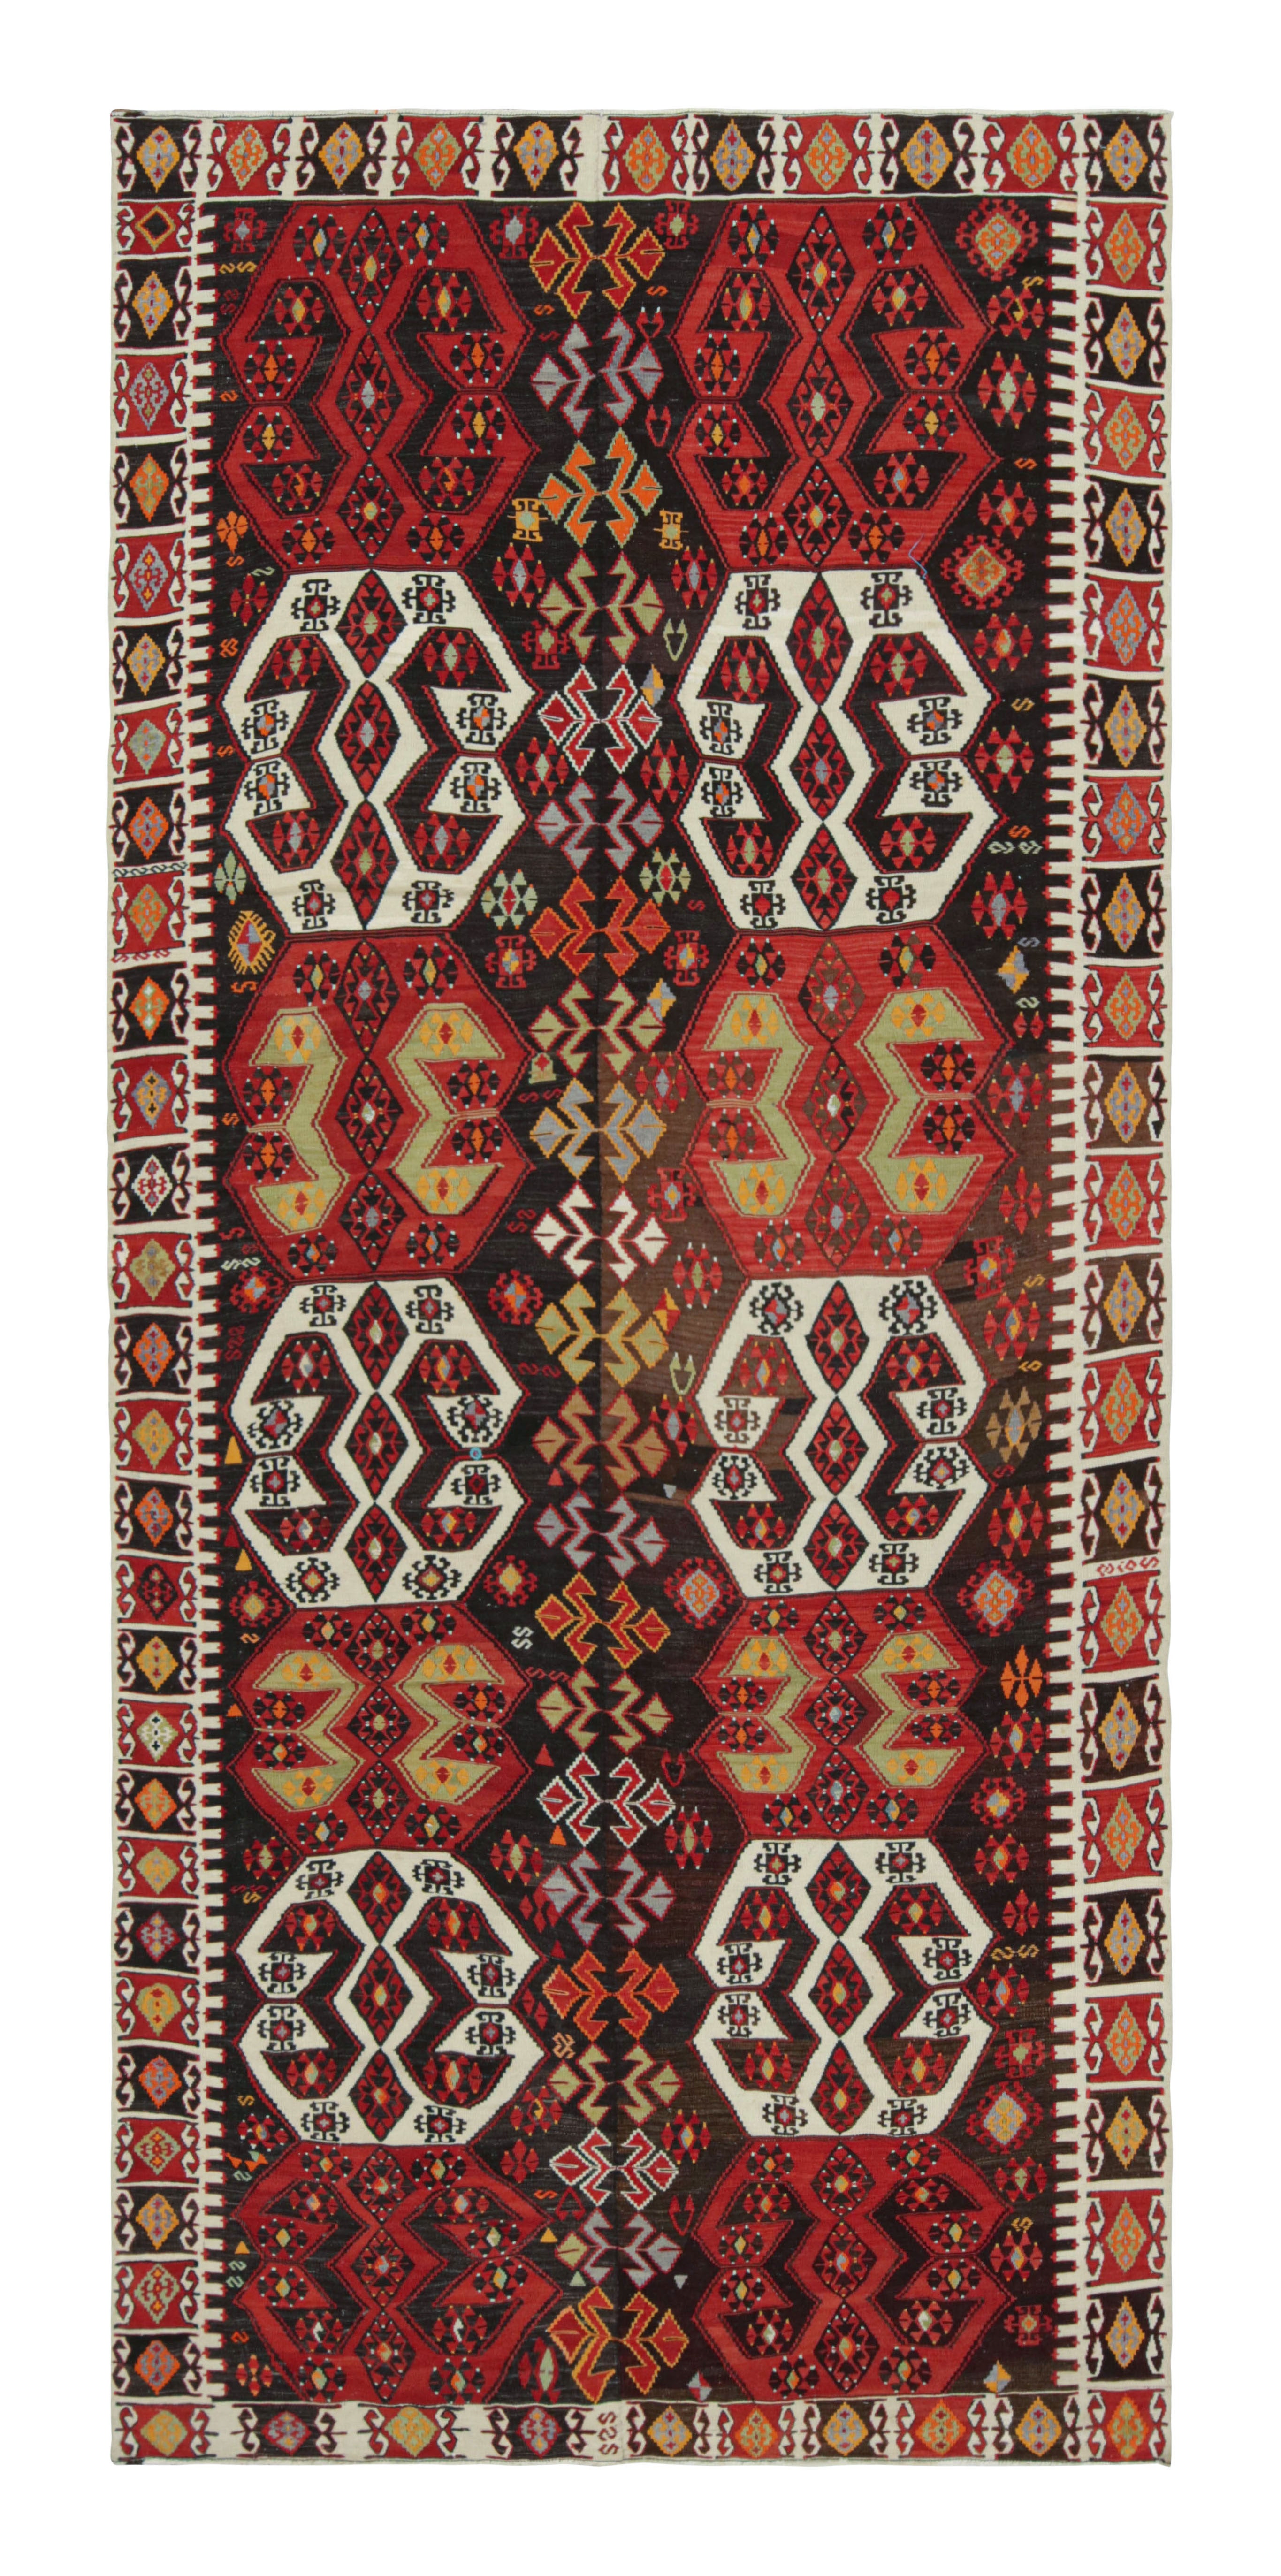 Vintage Midcentury Malatya Red and Off-White Wool Kilim Rug by Rug & Kilim